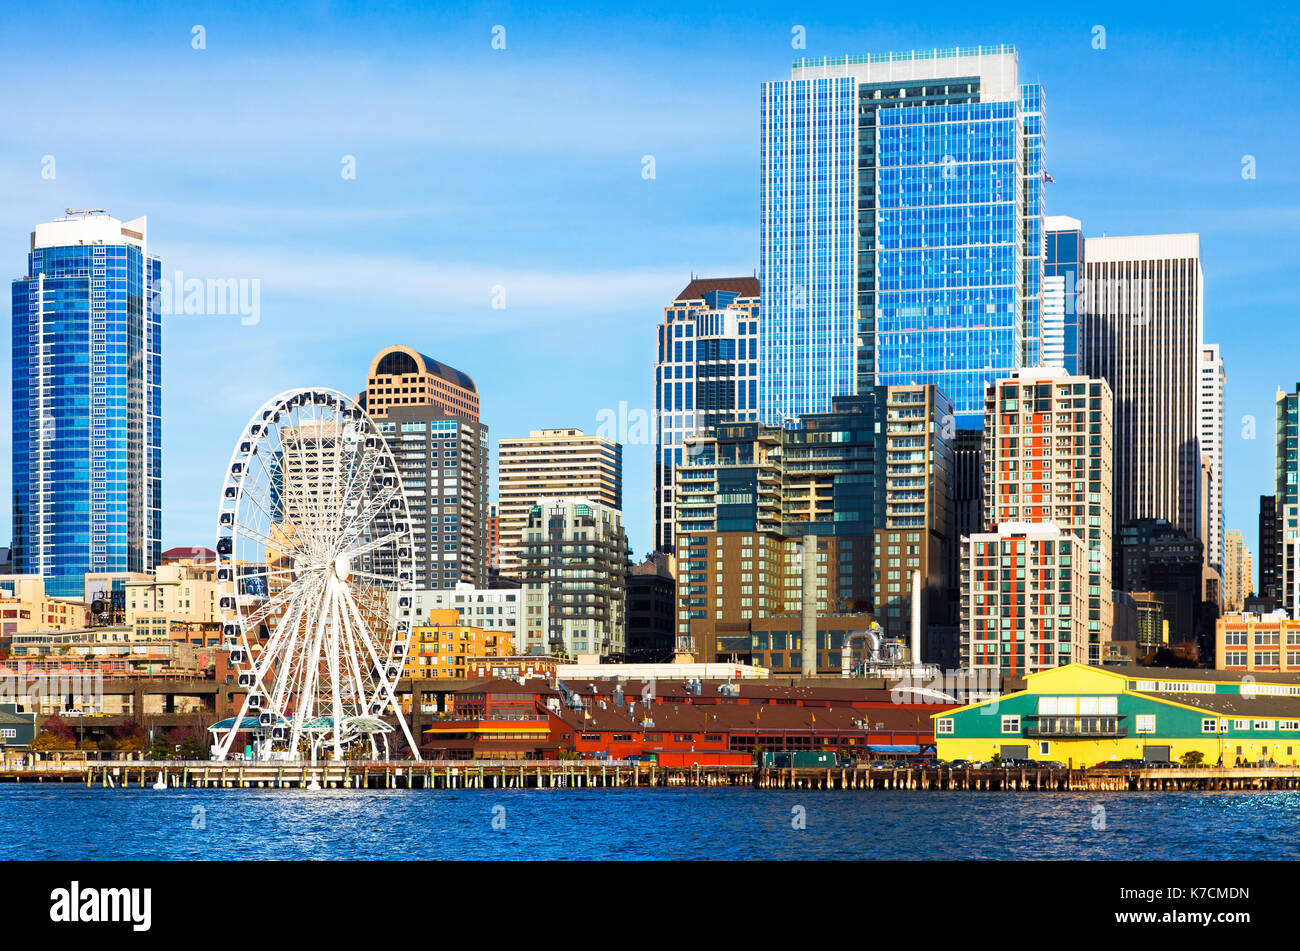 Lo skyline di Seattle e waterfront. ruota panoramica Ferris in primo piano immagine colorata vista dall'acqua. Foto Stock